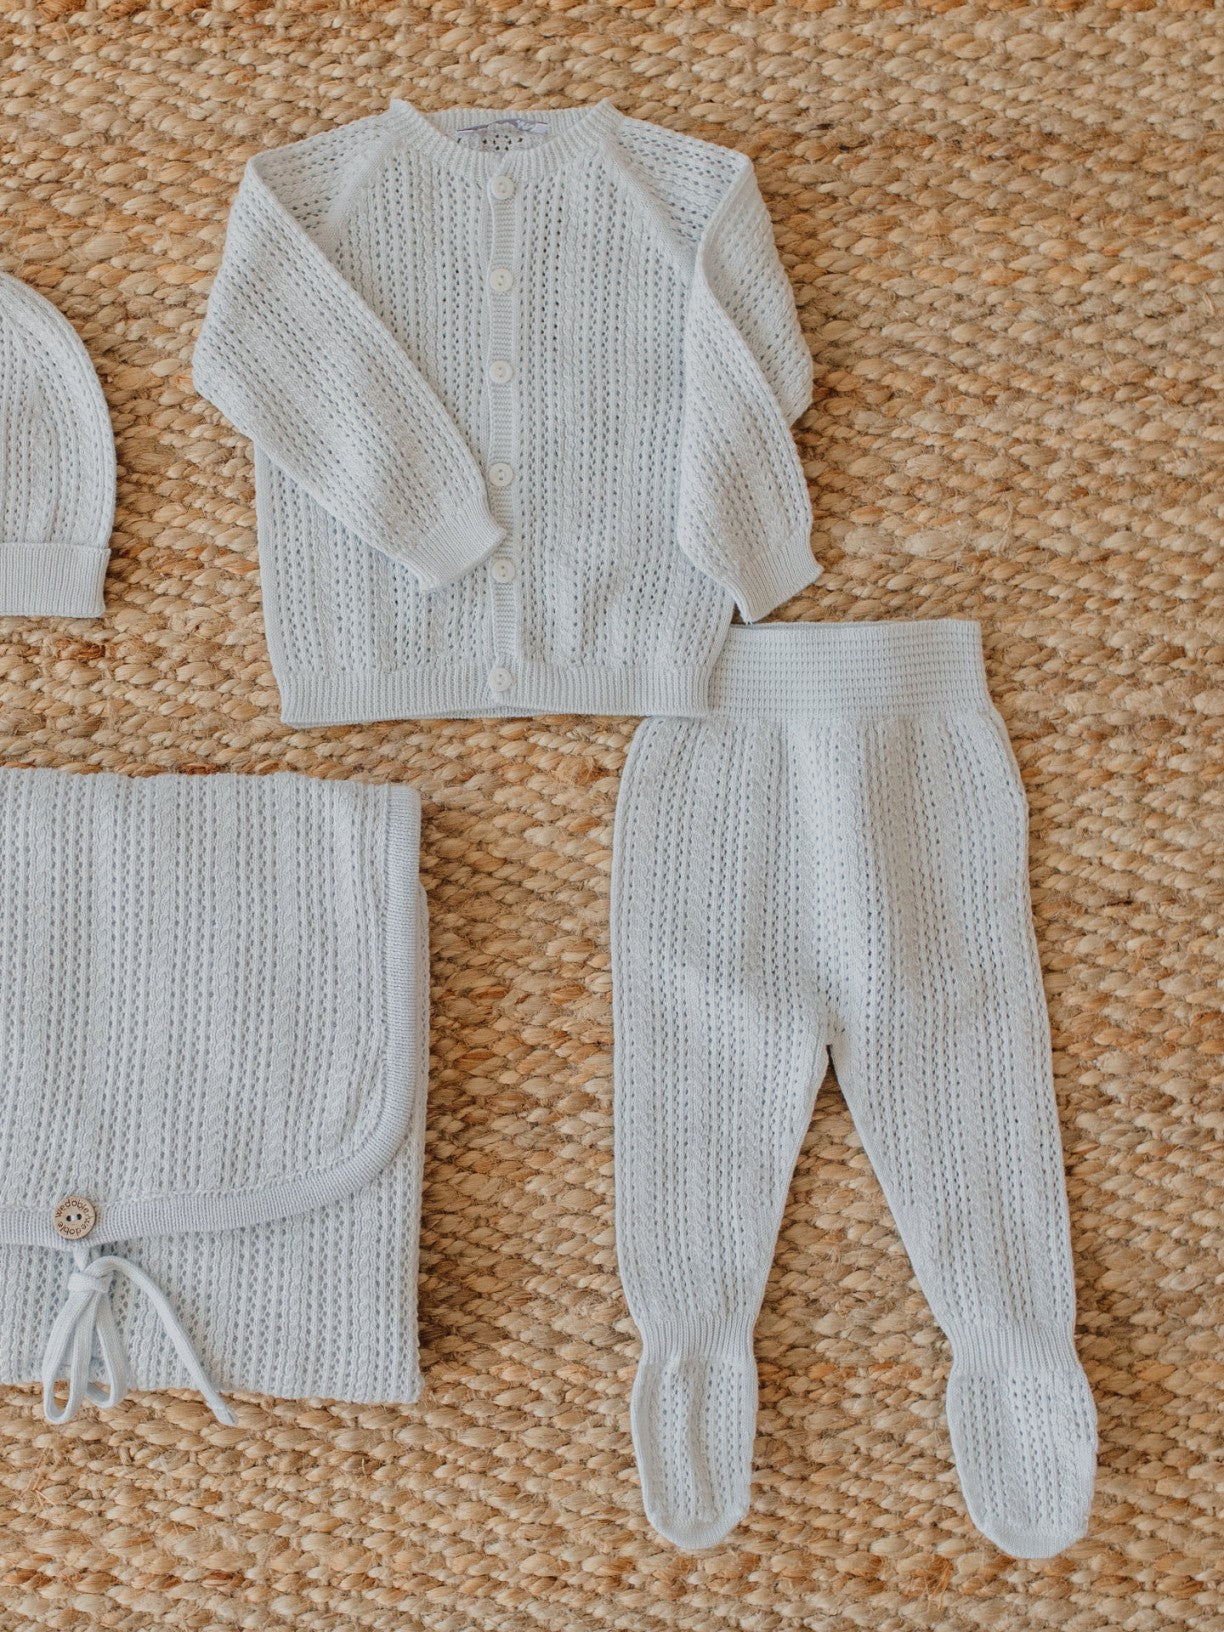 Casaco tricotado em algodão